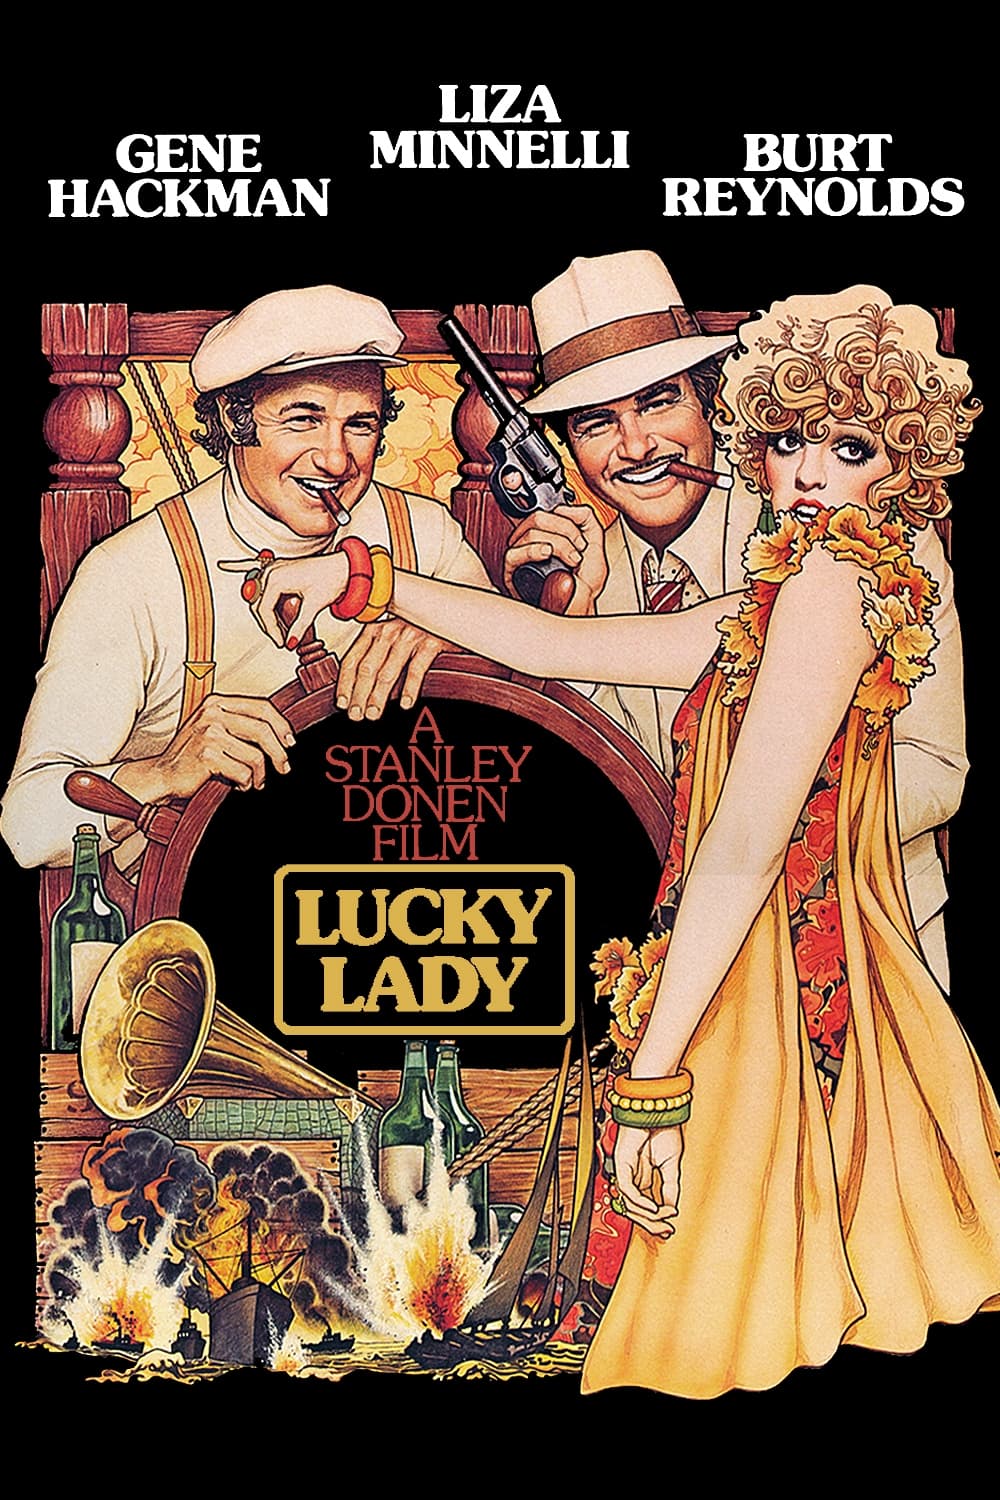 Les Aventuriers Du Lucky Lady